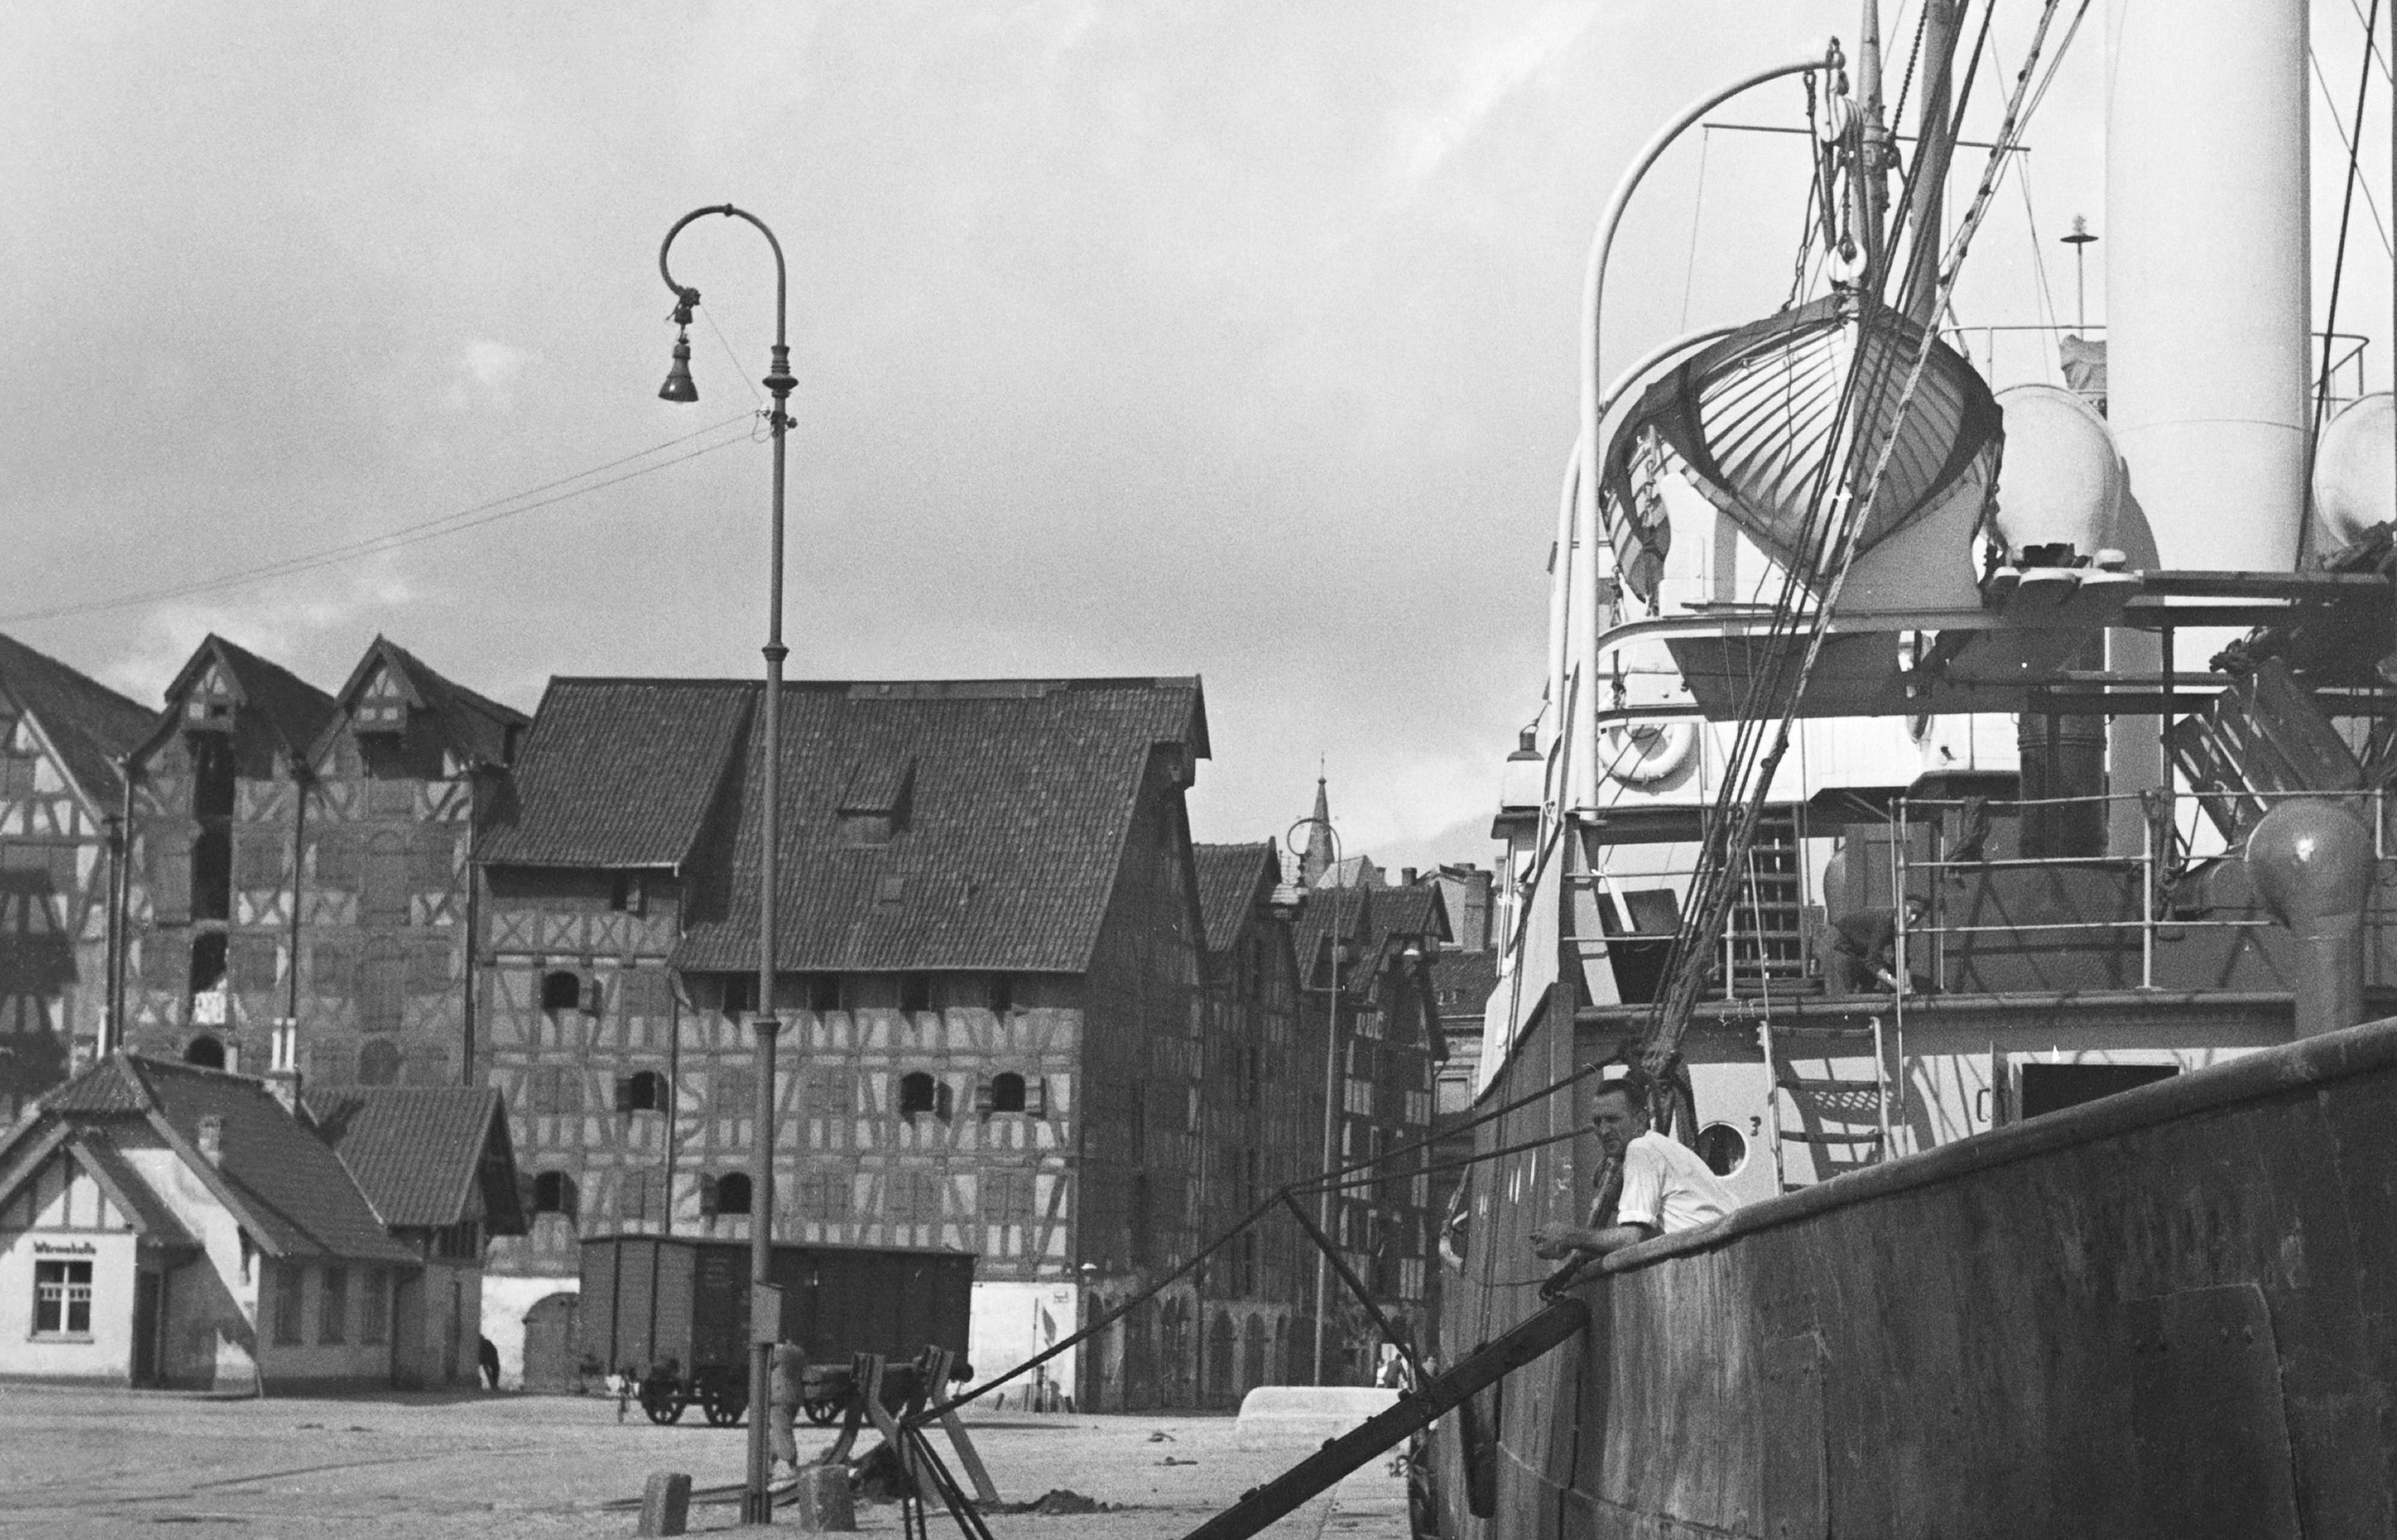 Ships at Koenigsberg harbor in East Prussia, Allemagne 1937 Imprimé ultérieurement - Photograph de Karl Heinrich Lämmel